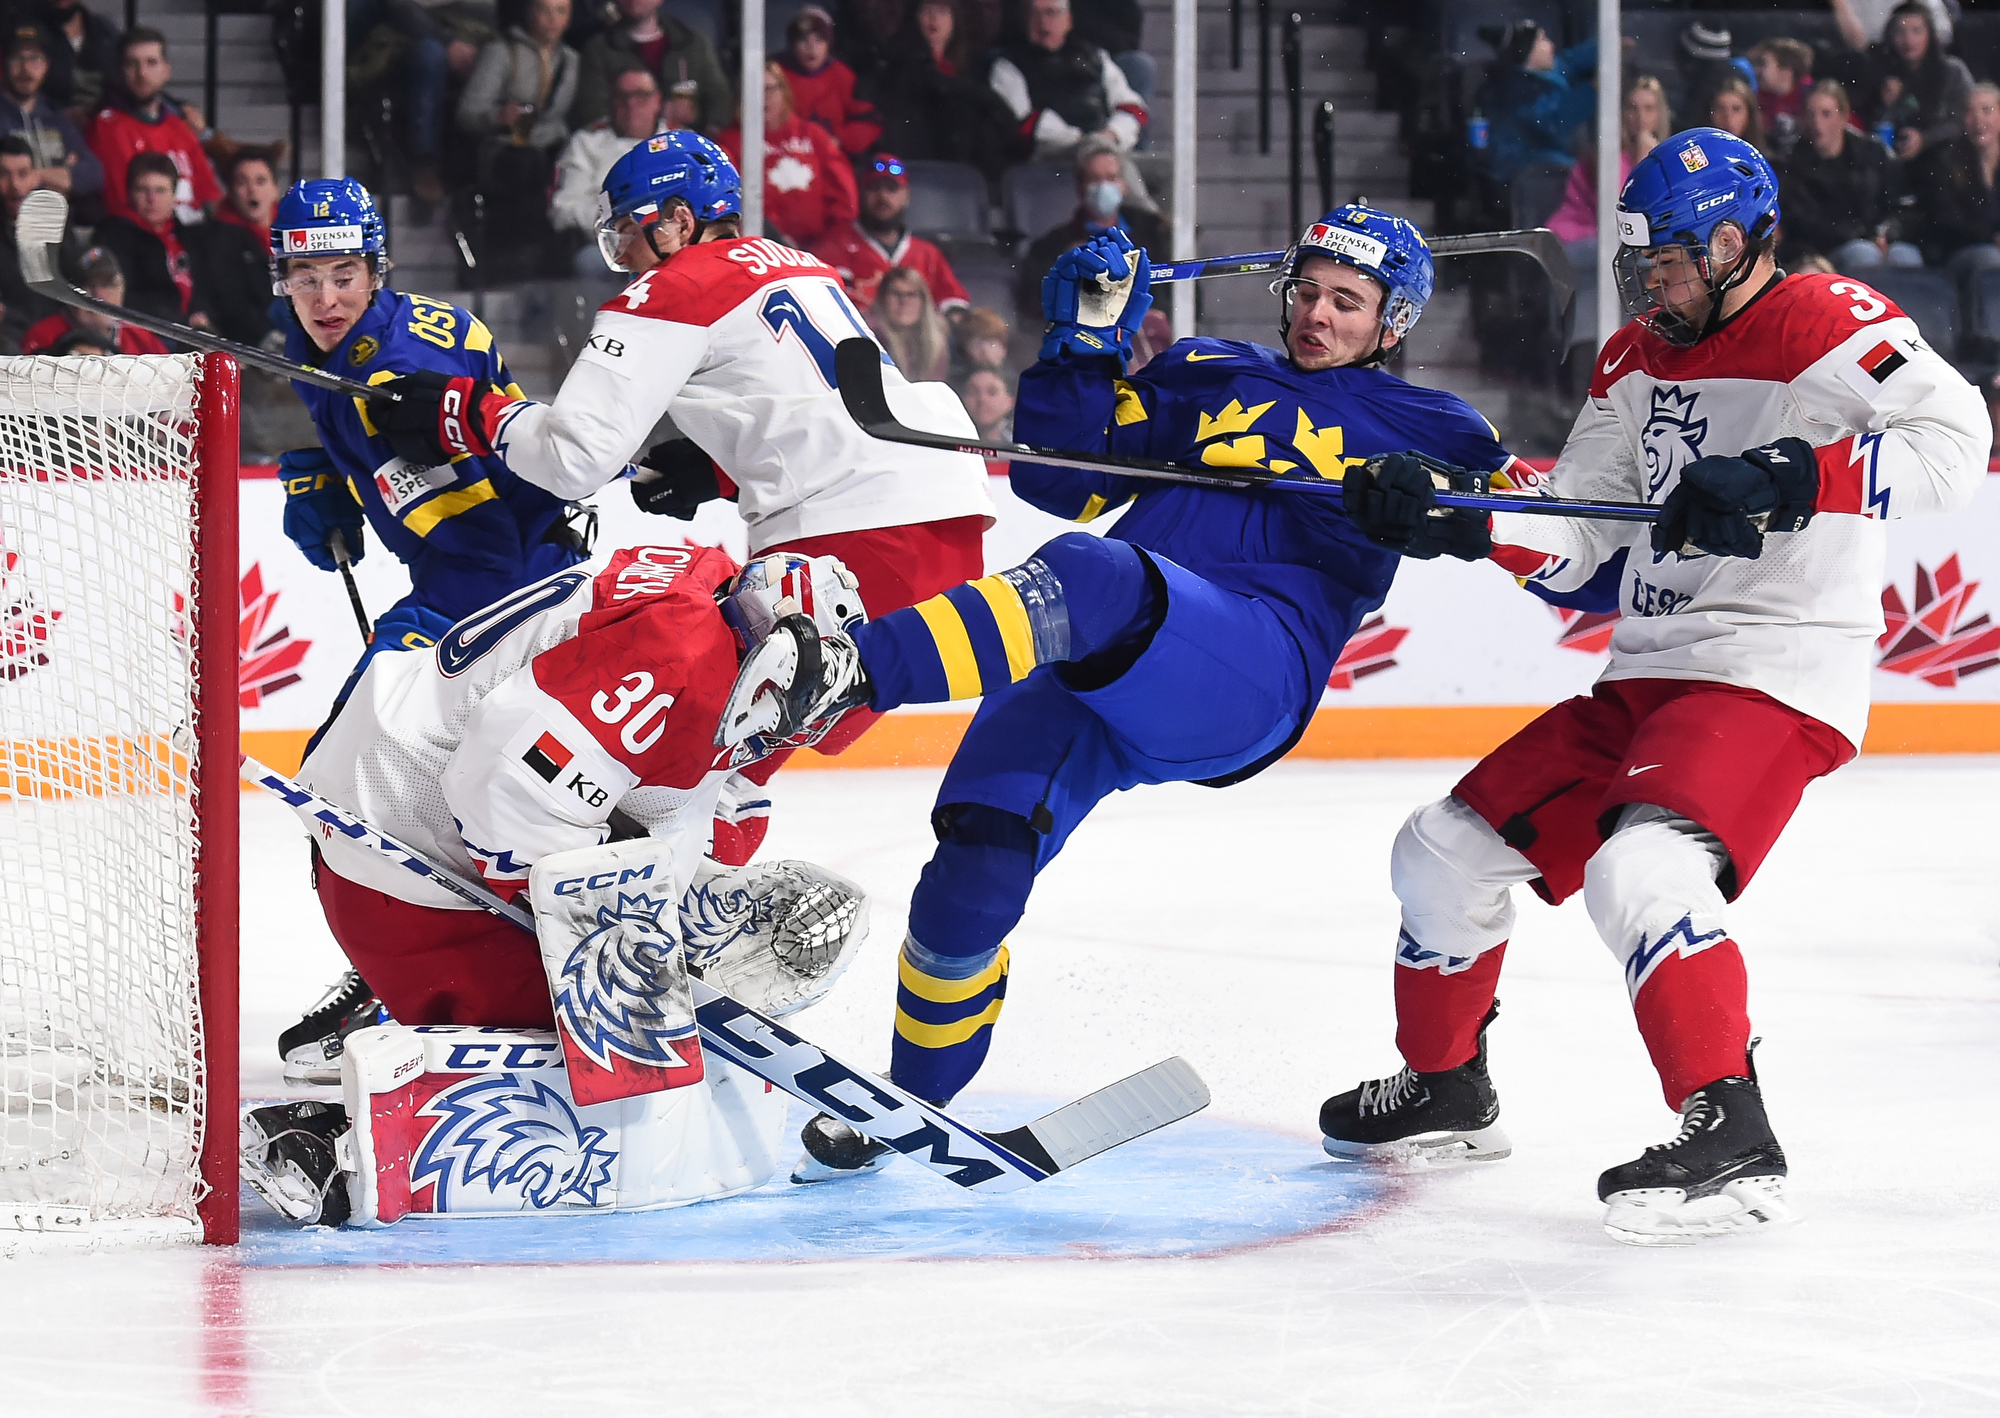 IIHF - Gallery Sweden vs Czechia